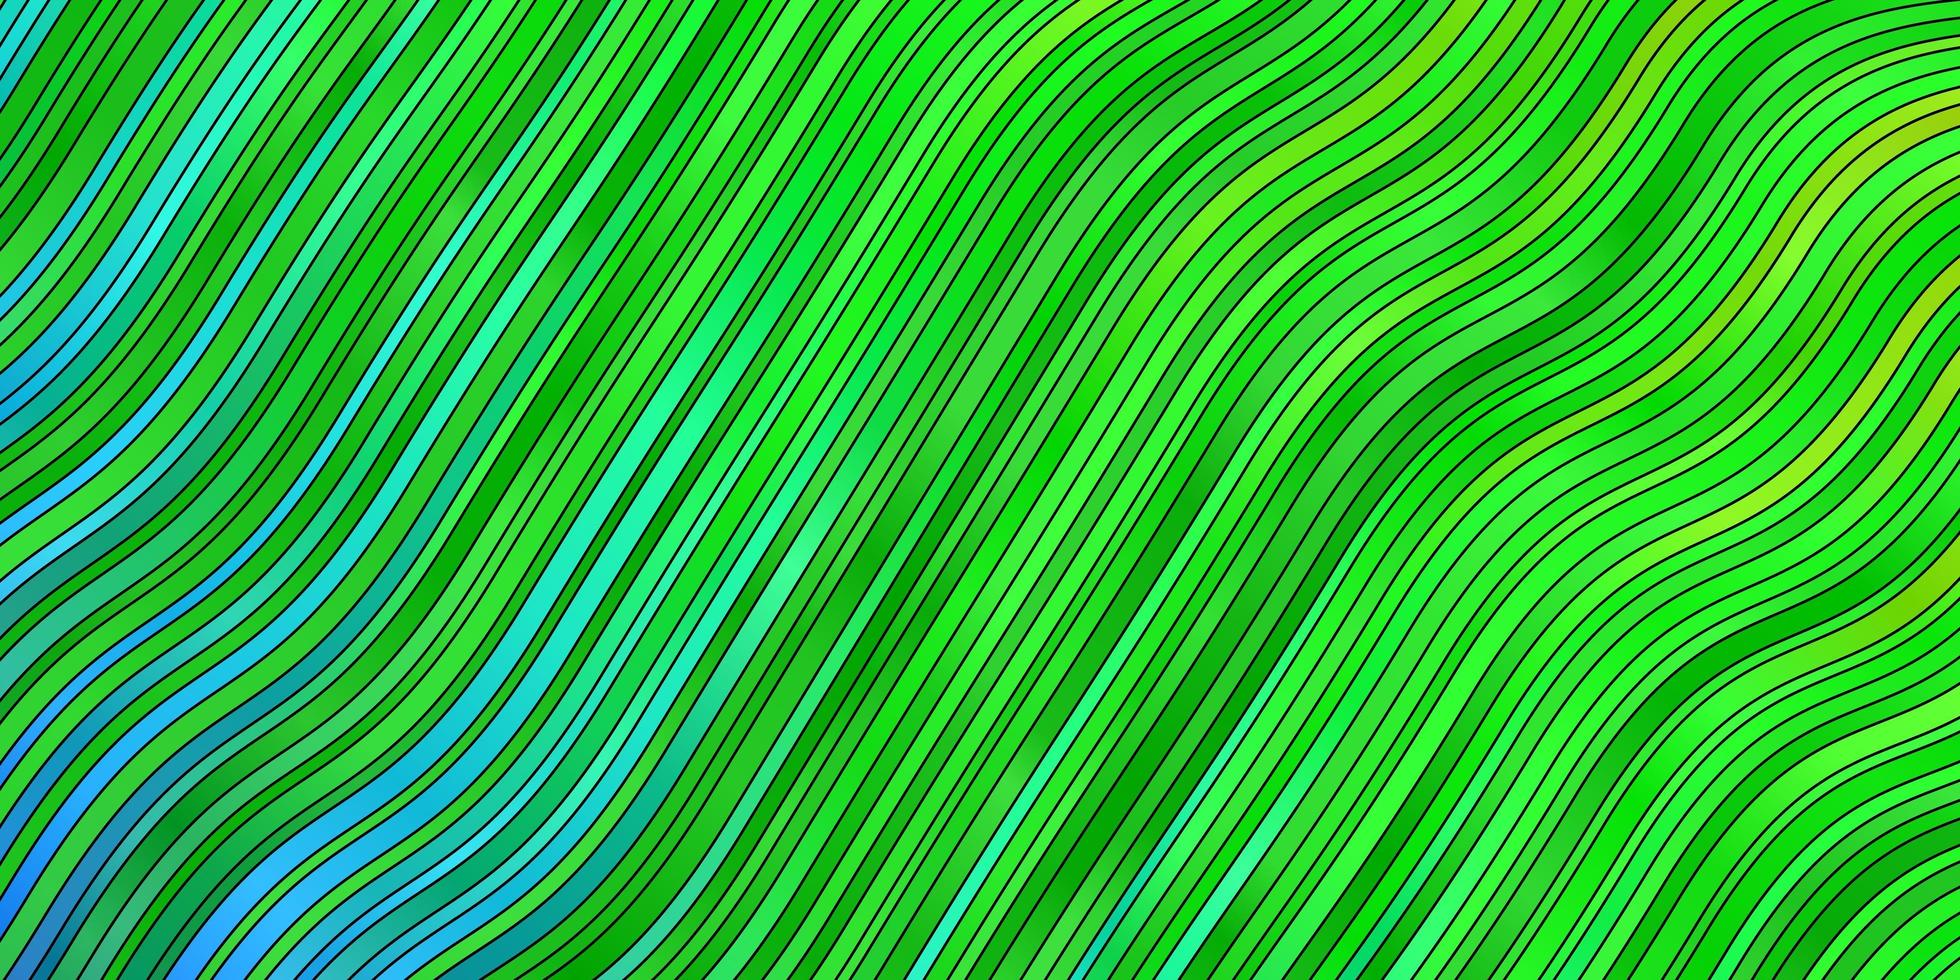 lichtblauwe, groene vectorlay-out met rondingen. abstracte gradiëntillustratie met wrange lijnen. slim ontwerp voor uw promoties. vector